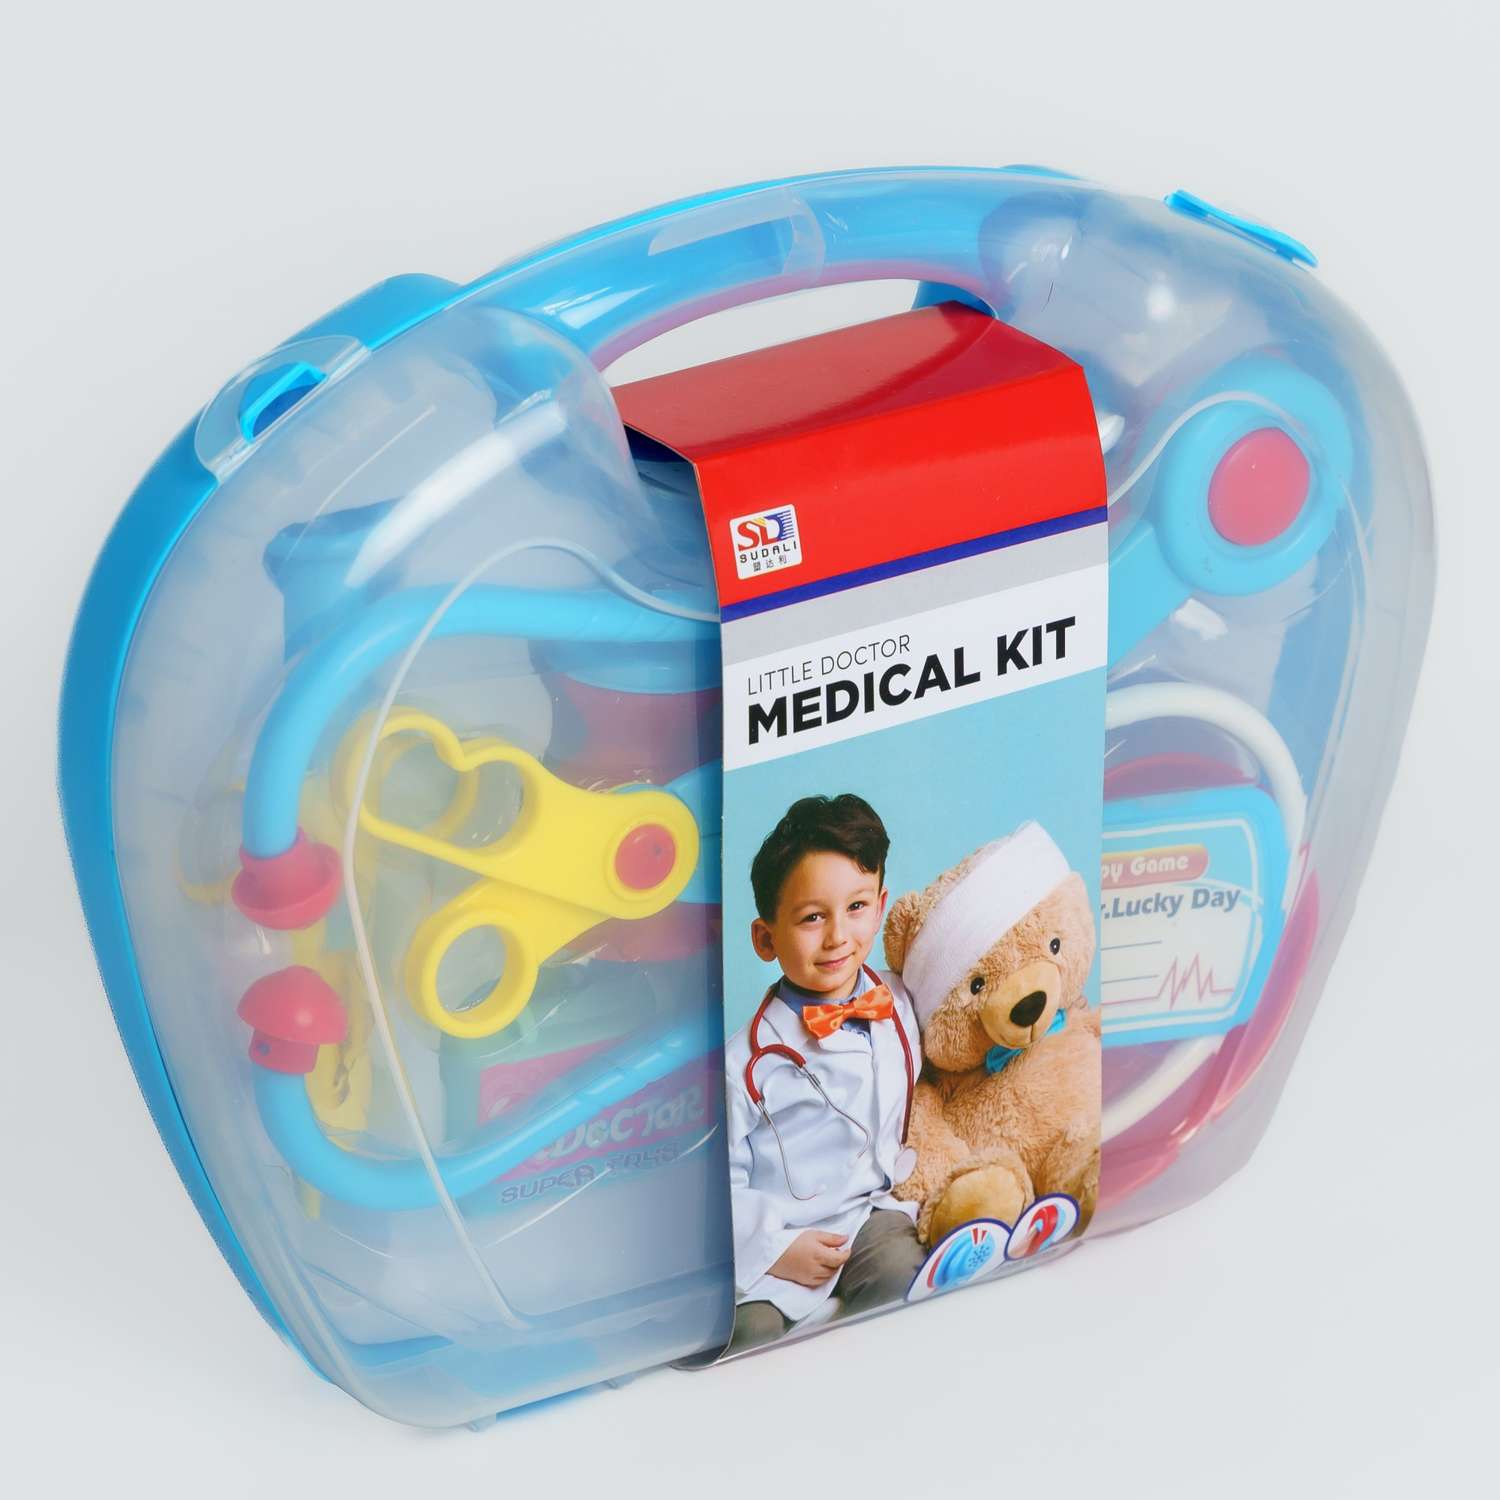 Набор доктора EstaBella со световыми и звуковыми эффектами развивающая пластиковая интересная игрушка - фото 1